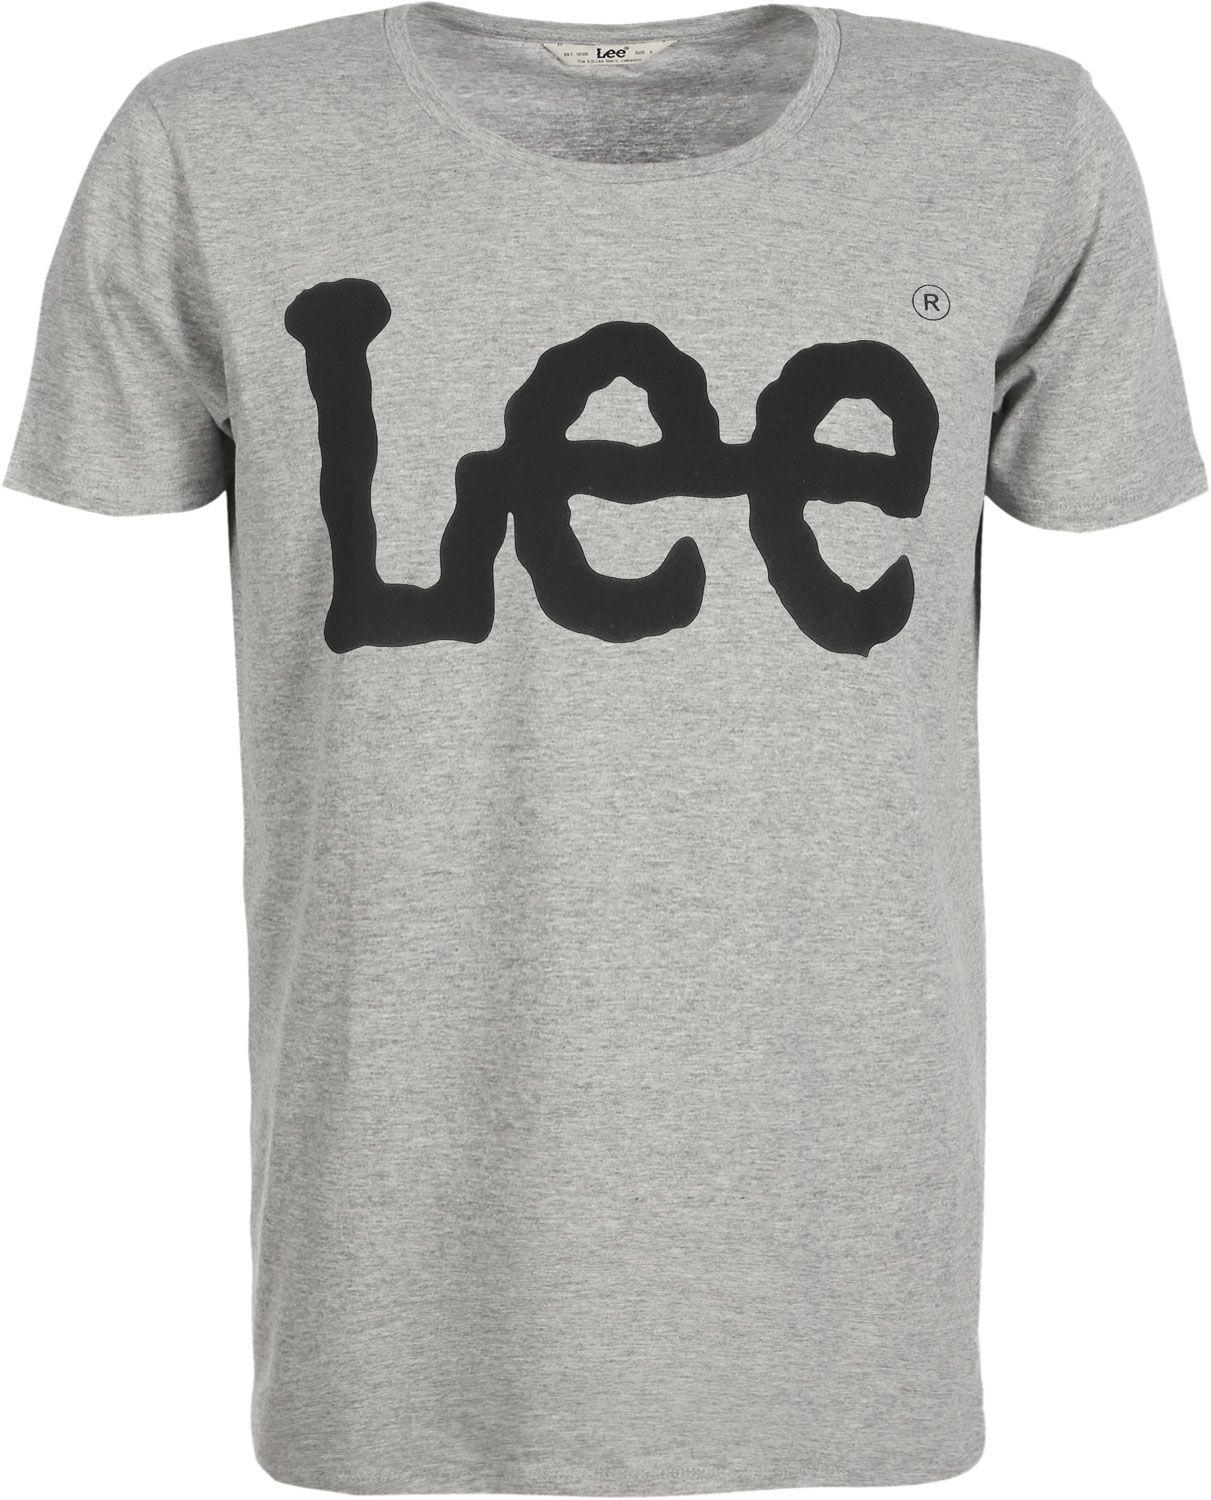 Lee Logo - Lee Logo T-shirt grey heather | WeAre Shop